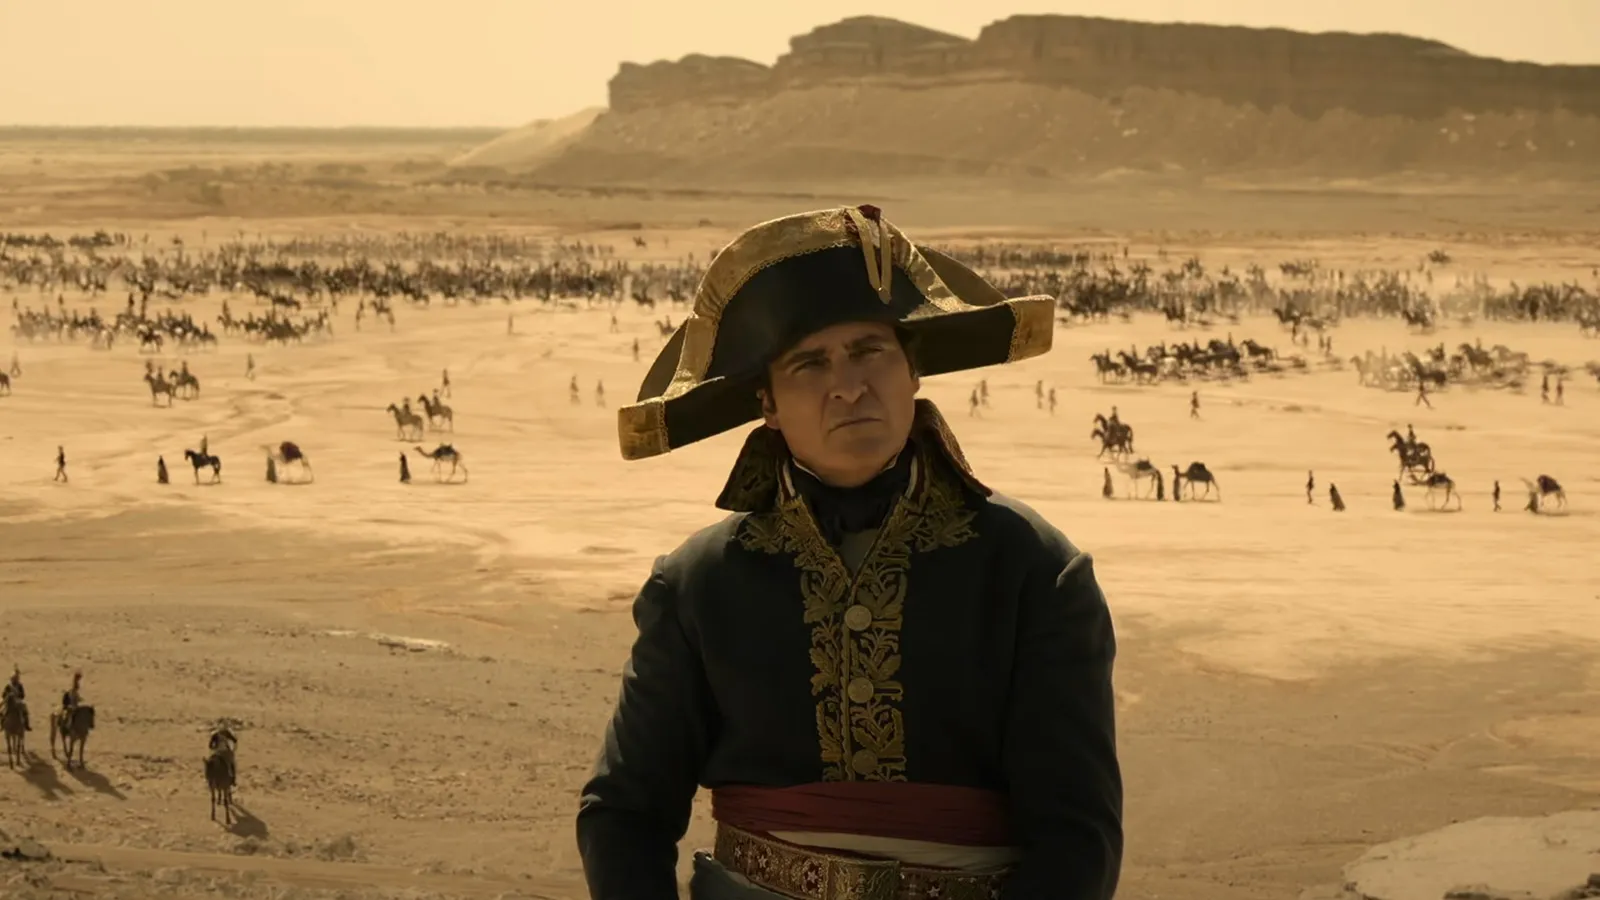 
											
											Хоакин Феникс иштирокидаги “Наполеон” тарихий фильмининг трейлери намойиш қилинди
											
											